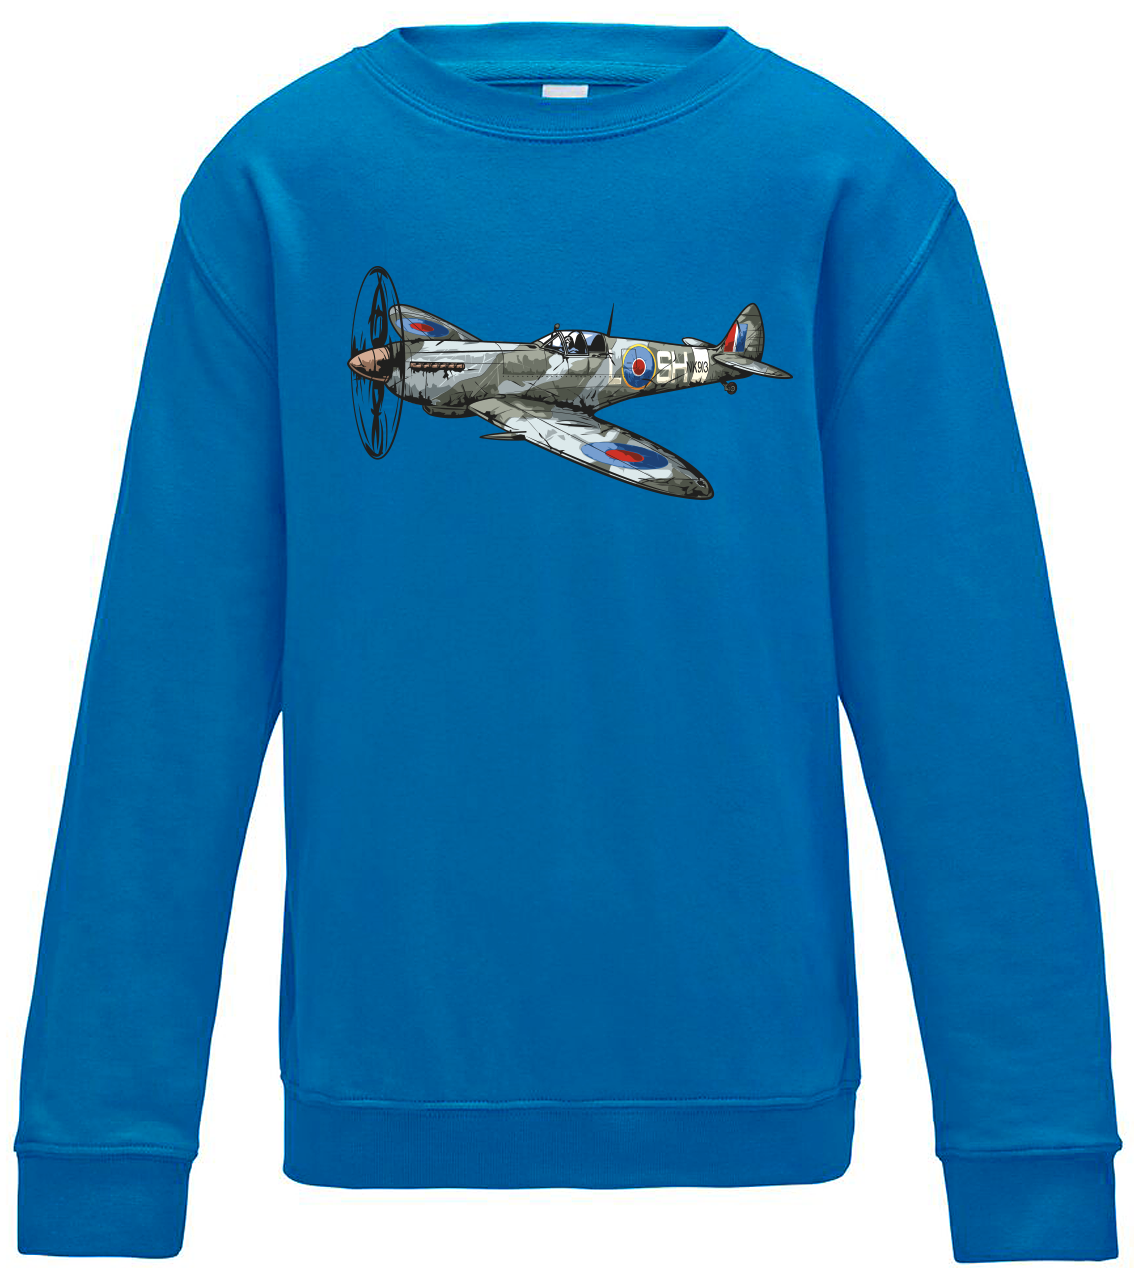 Dětská mikina s letadlem - Spitfire Velikost: 7/8 (122/128), Barva: Modrá